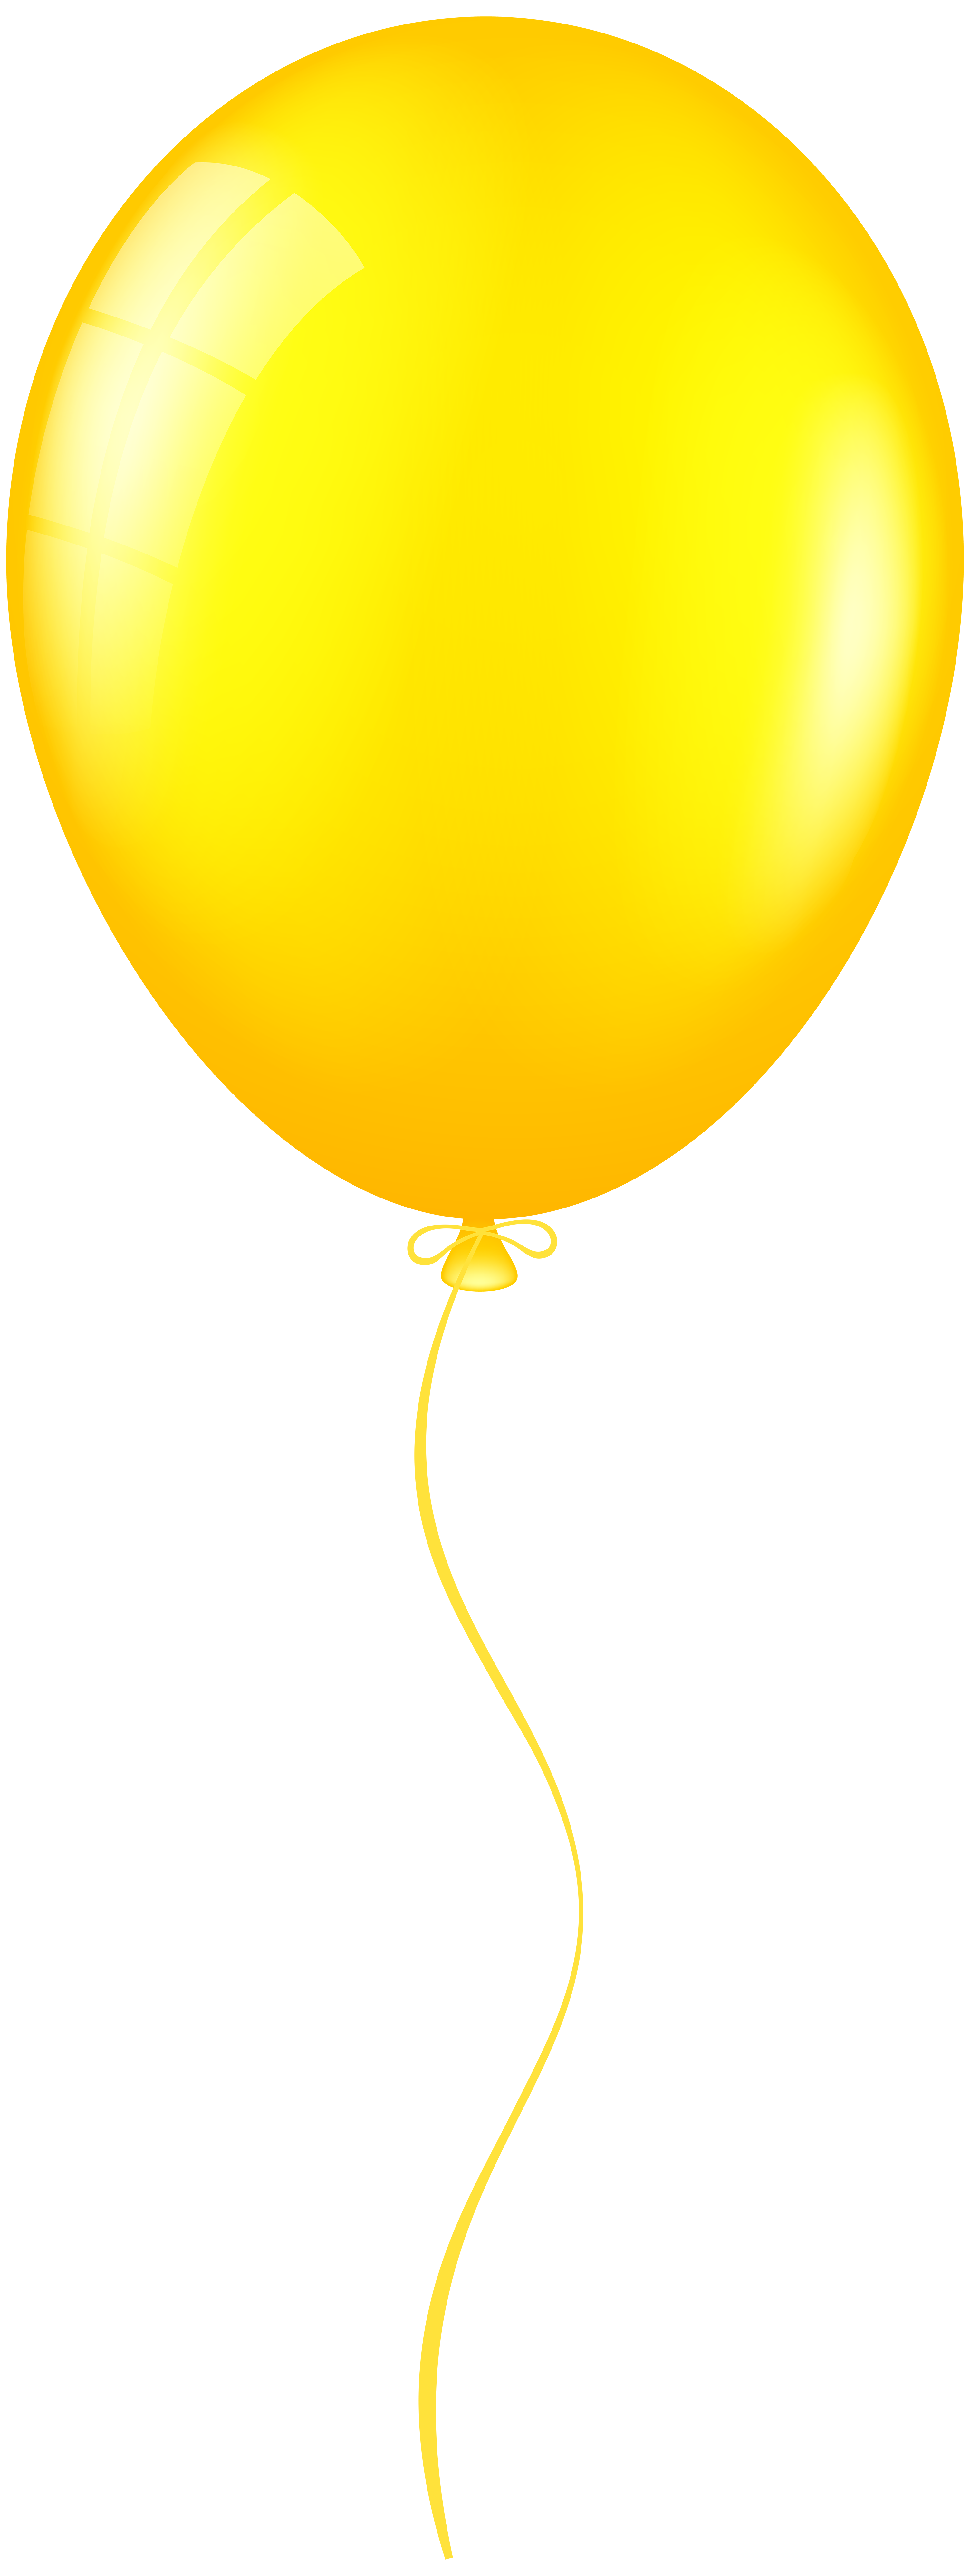 Yellow Balloon Png Clip Art Best Web Clipart